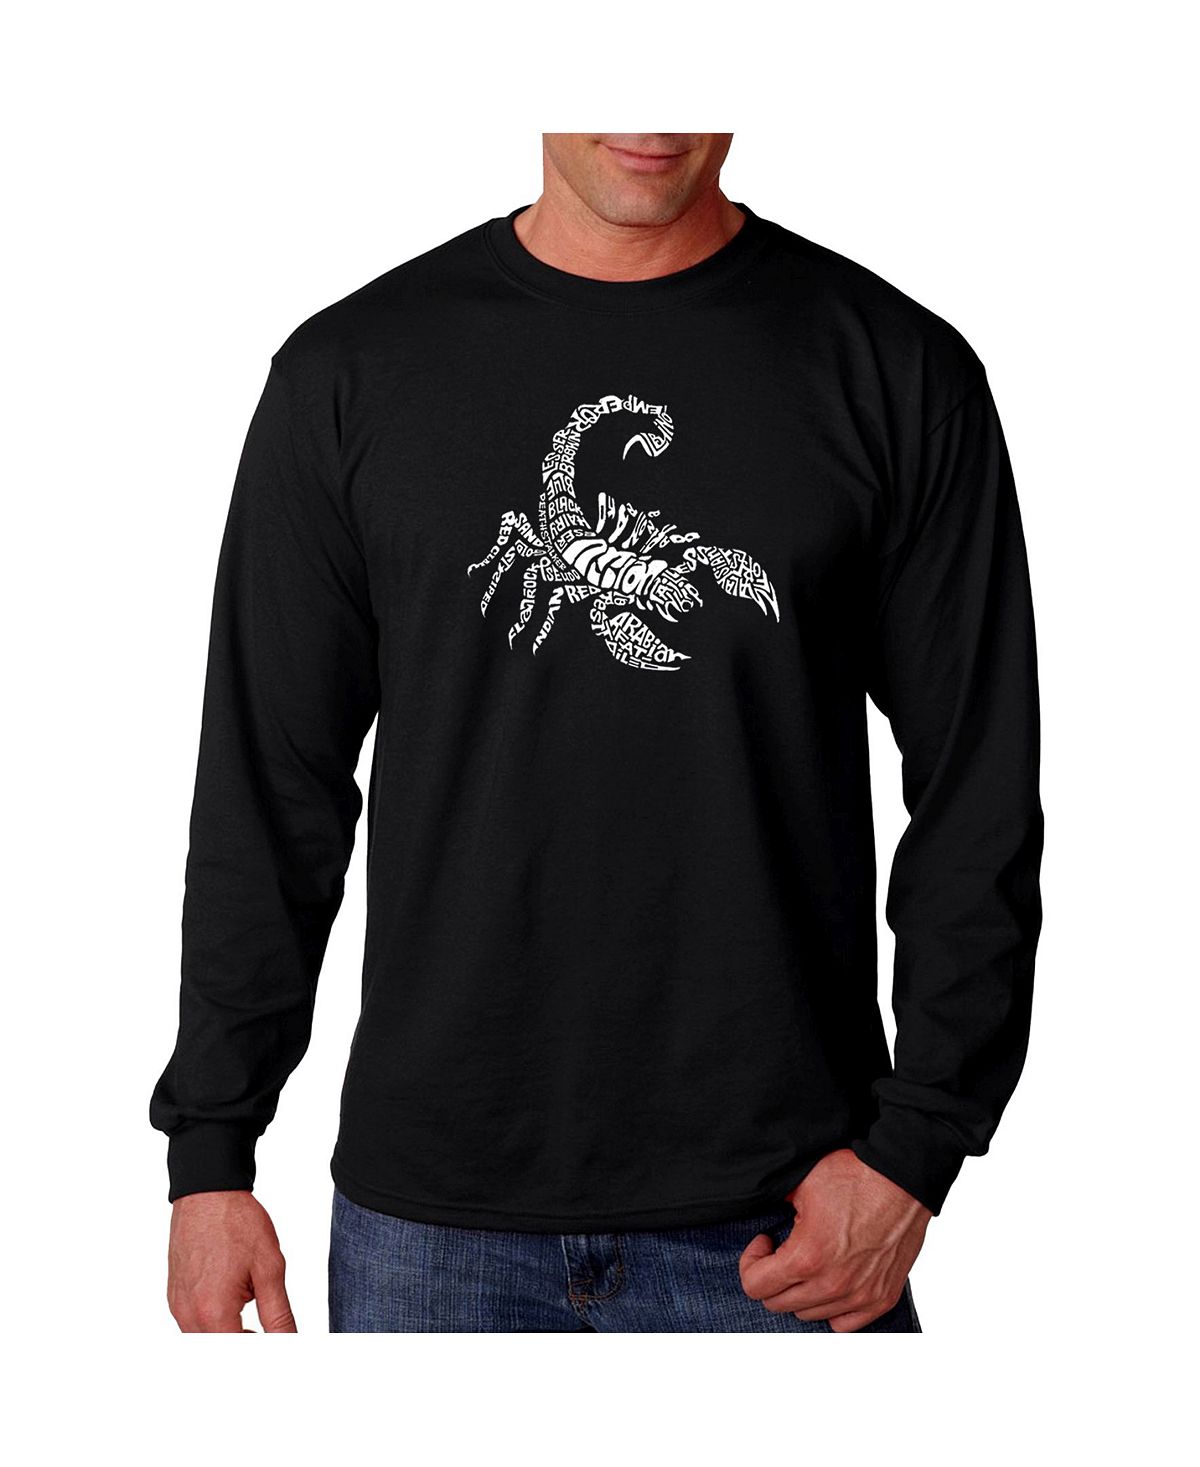 созвездие скорпиона Мужская футболка с длинным рукавом word art - types of scorpions LA Pop Art, черный